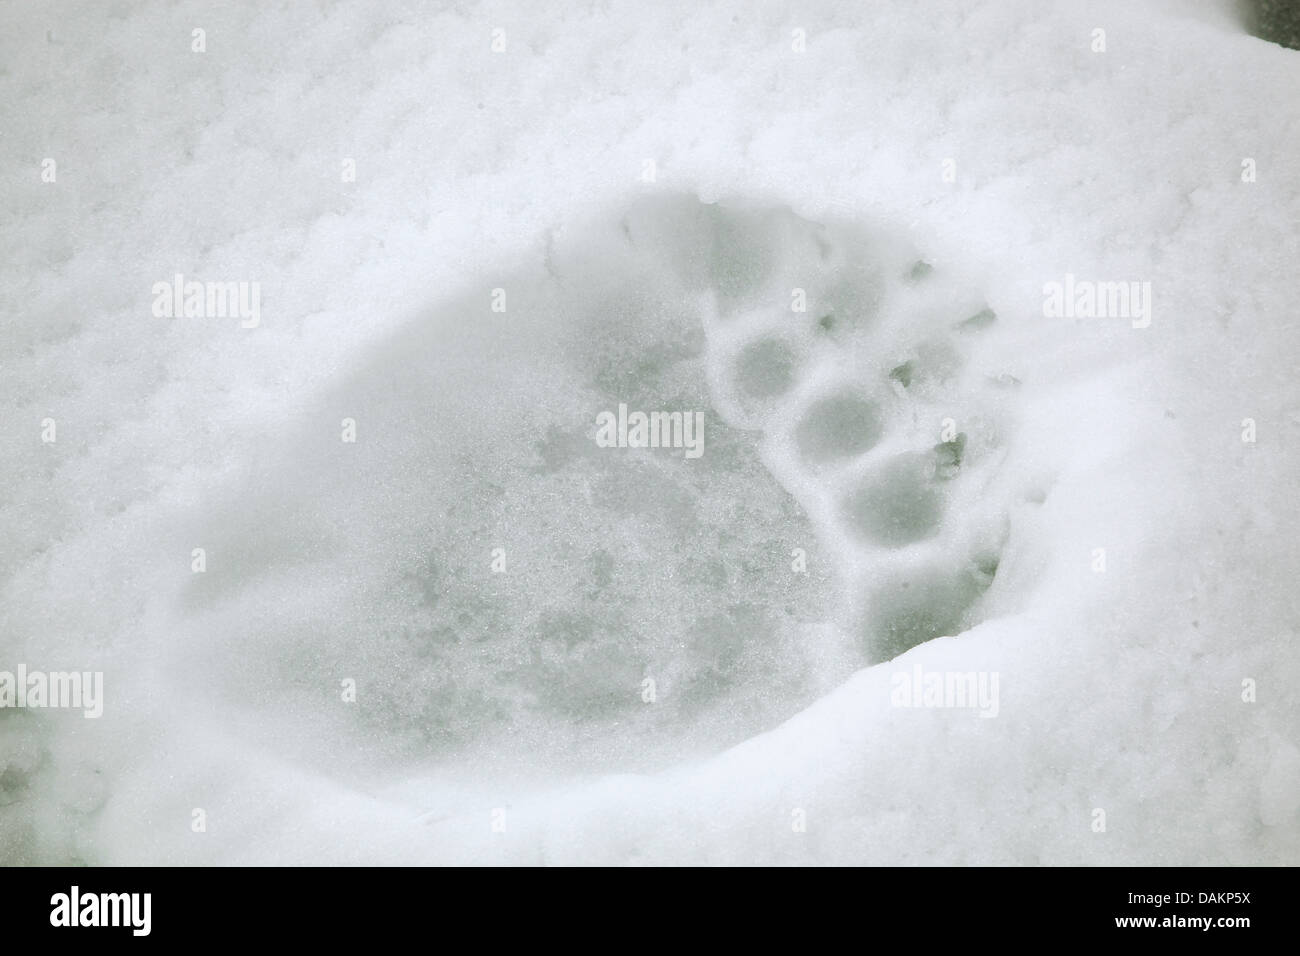 L'ours polaire (Ursus maritimus), imprimer des pieds d'un ours blanc dans la neige, au Canada, le Nunavut, le parc national Sirmilik Banque D'Images